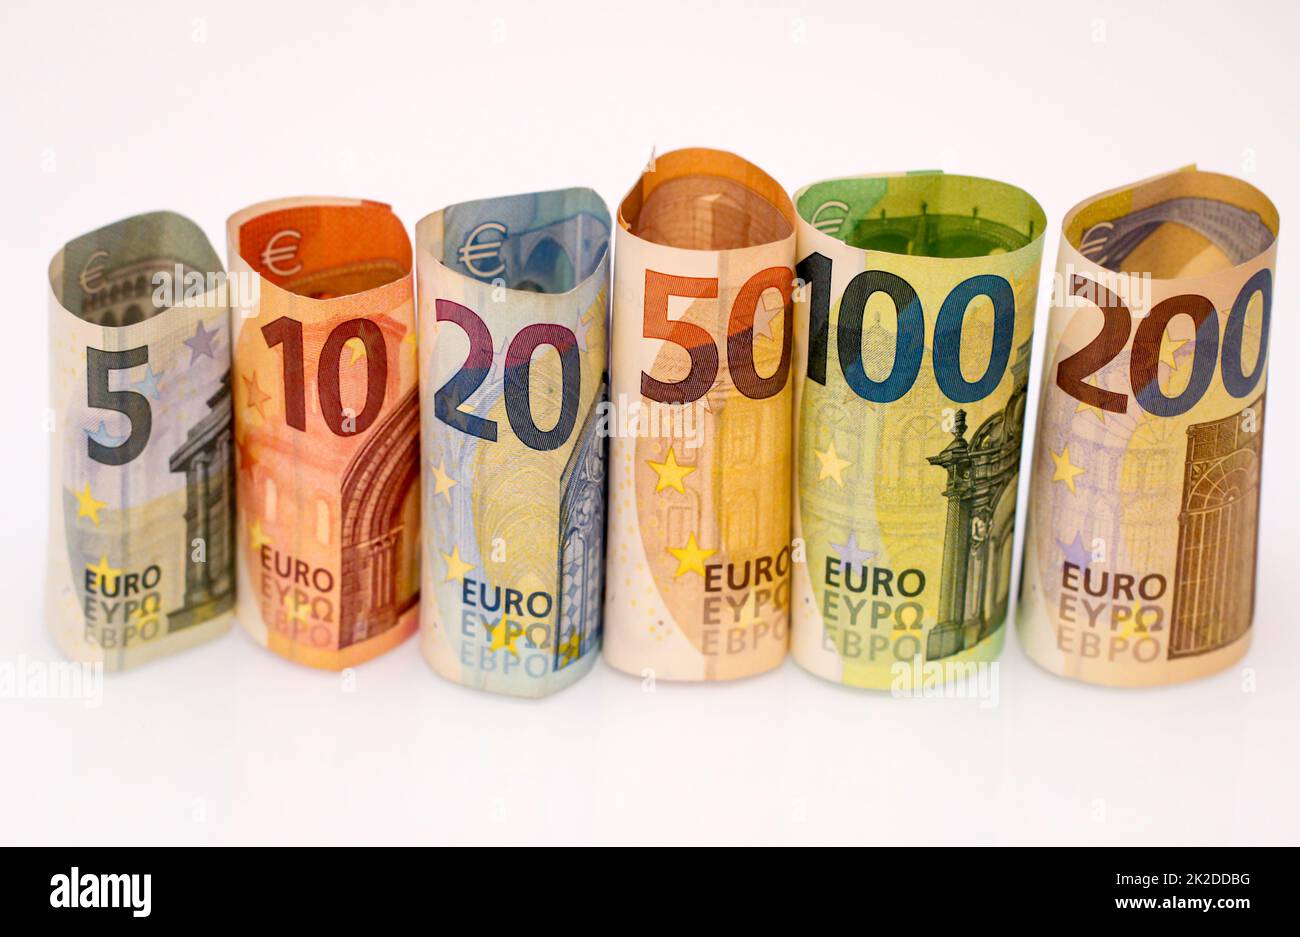 Rollen mit mehreren Euro-Banknoten, Euro-Banknoten stehen nebeneinander wie eine Rolle zusammen. Stockfoto